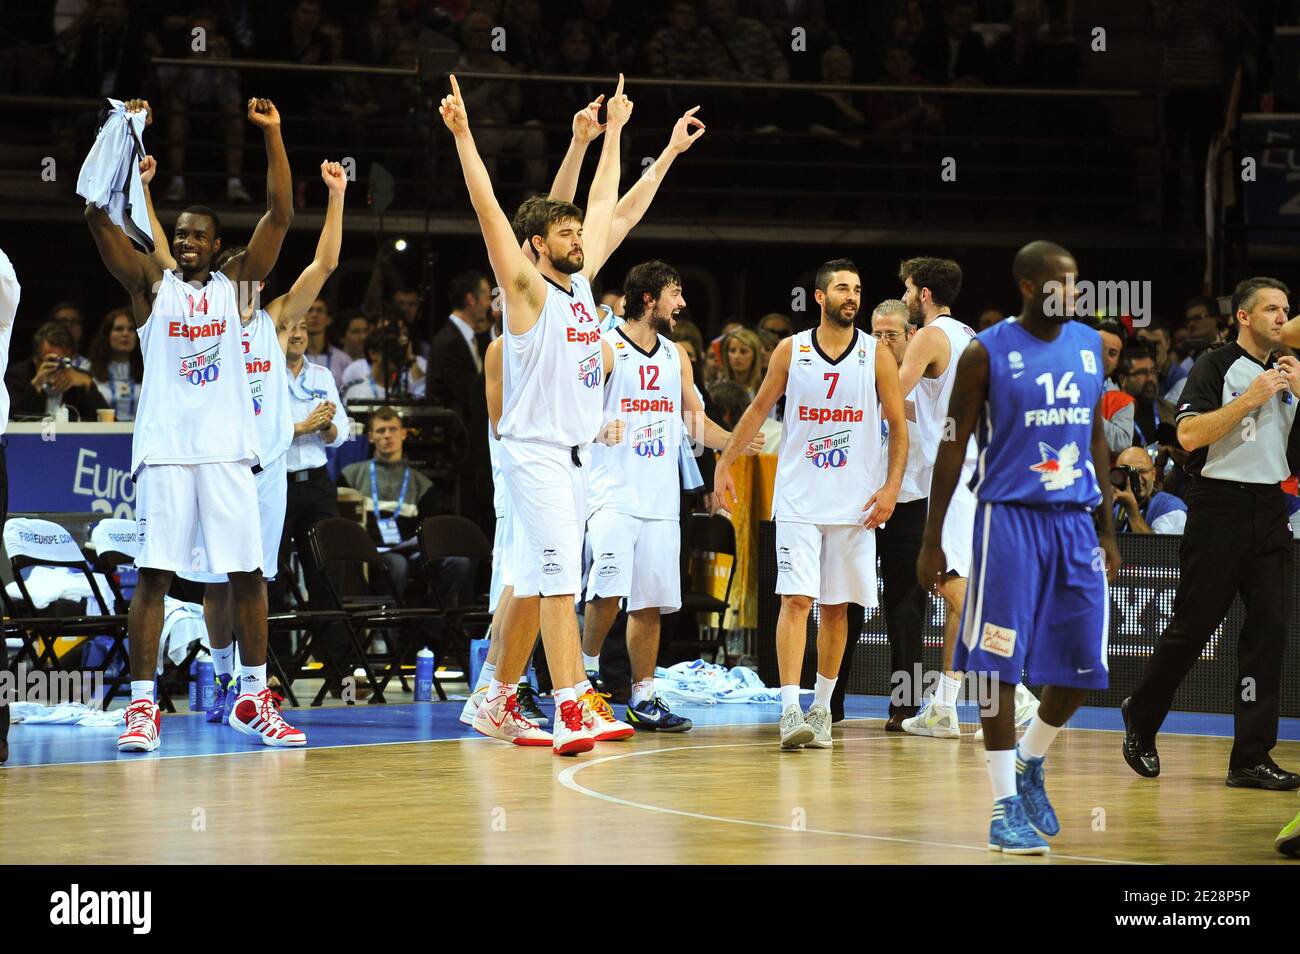 Los jugadores de la selección nacional de España celebran la victoria  después del Campeonato Europeo de Baloncesto Masculino final, España vs  Francia en Kaunas, Lituania el 18 de septiembre de 2011. España